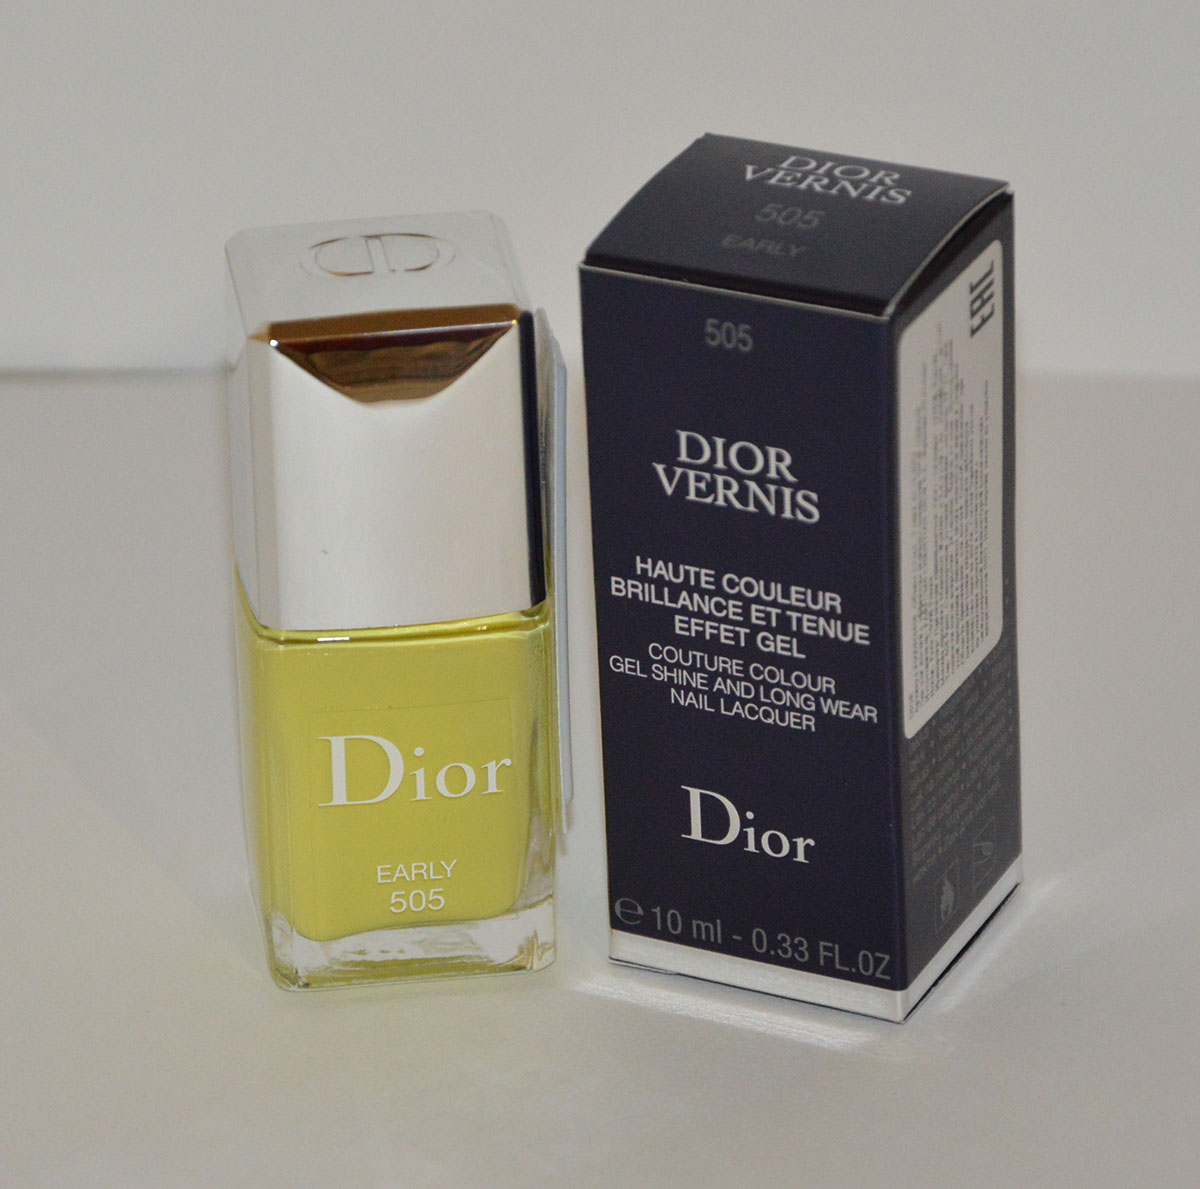 Новый лак Dior Early из весенней коллекции 2017